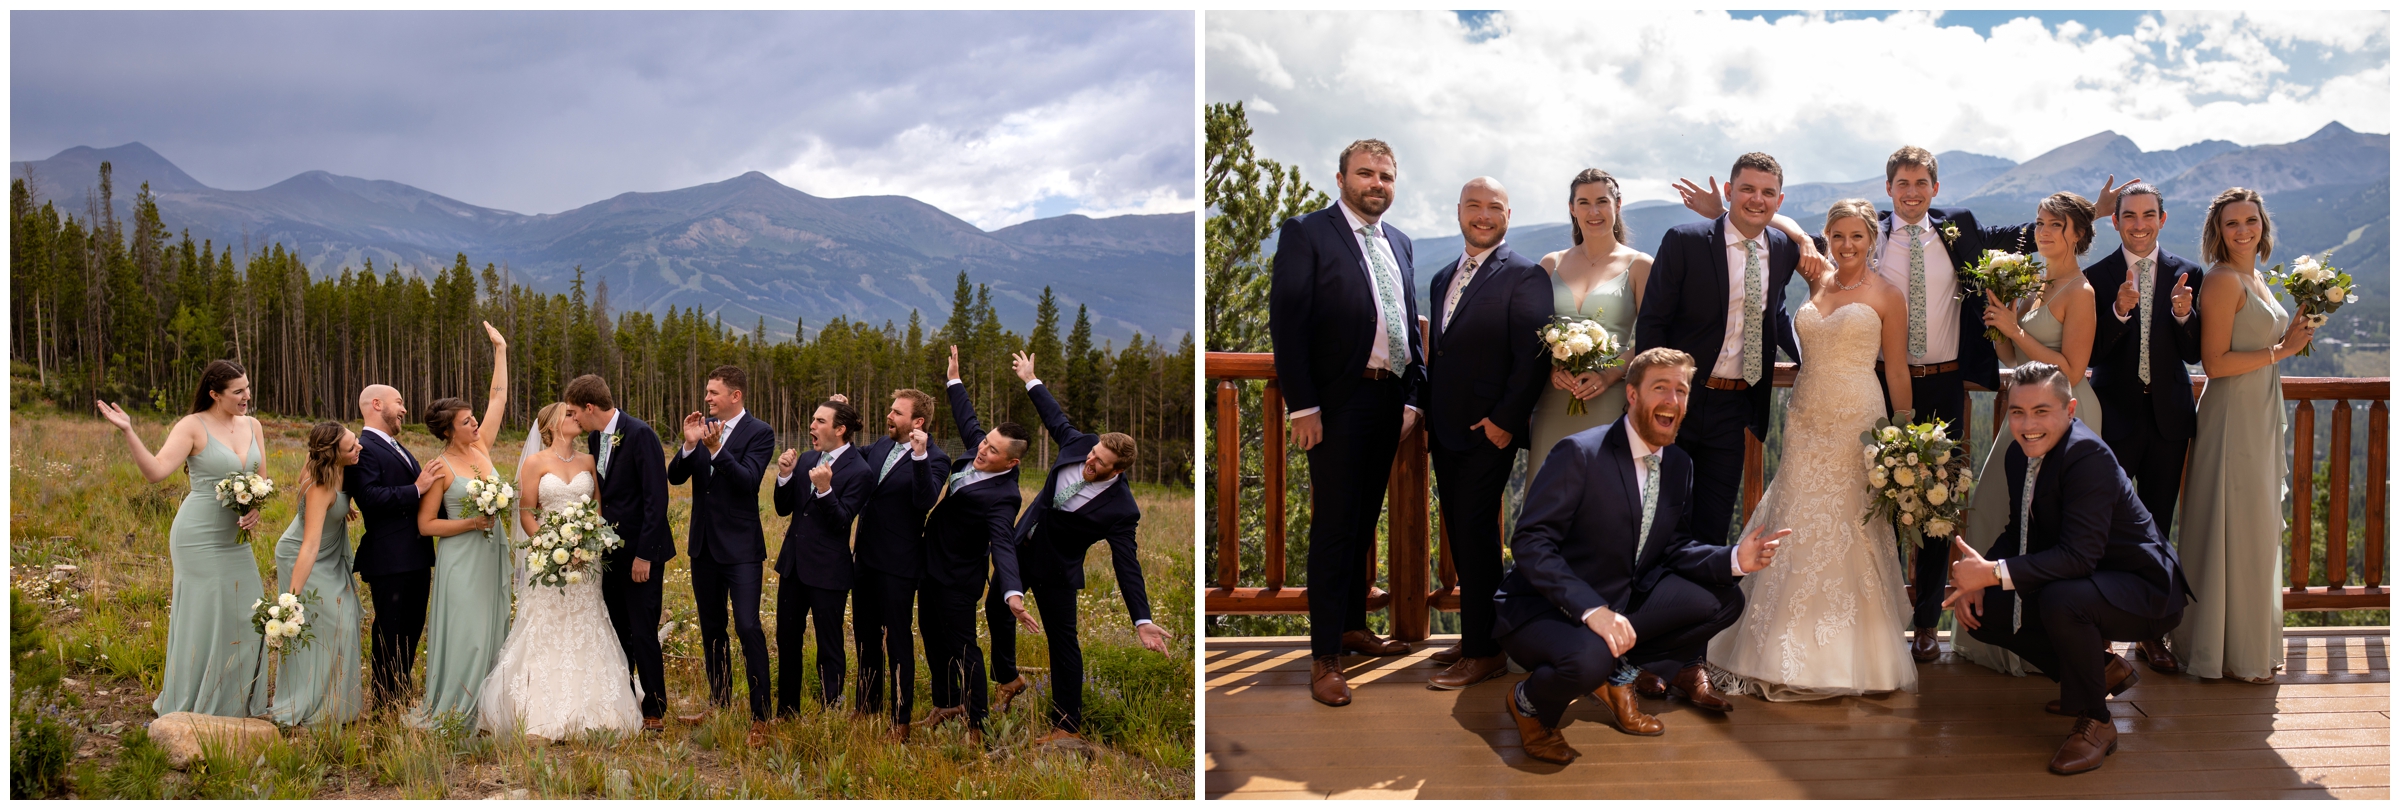 fun wedding party photos in the Colorado mountains